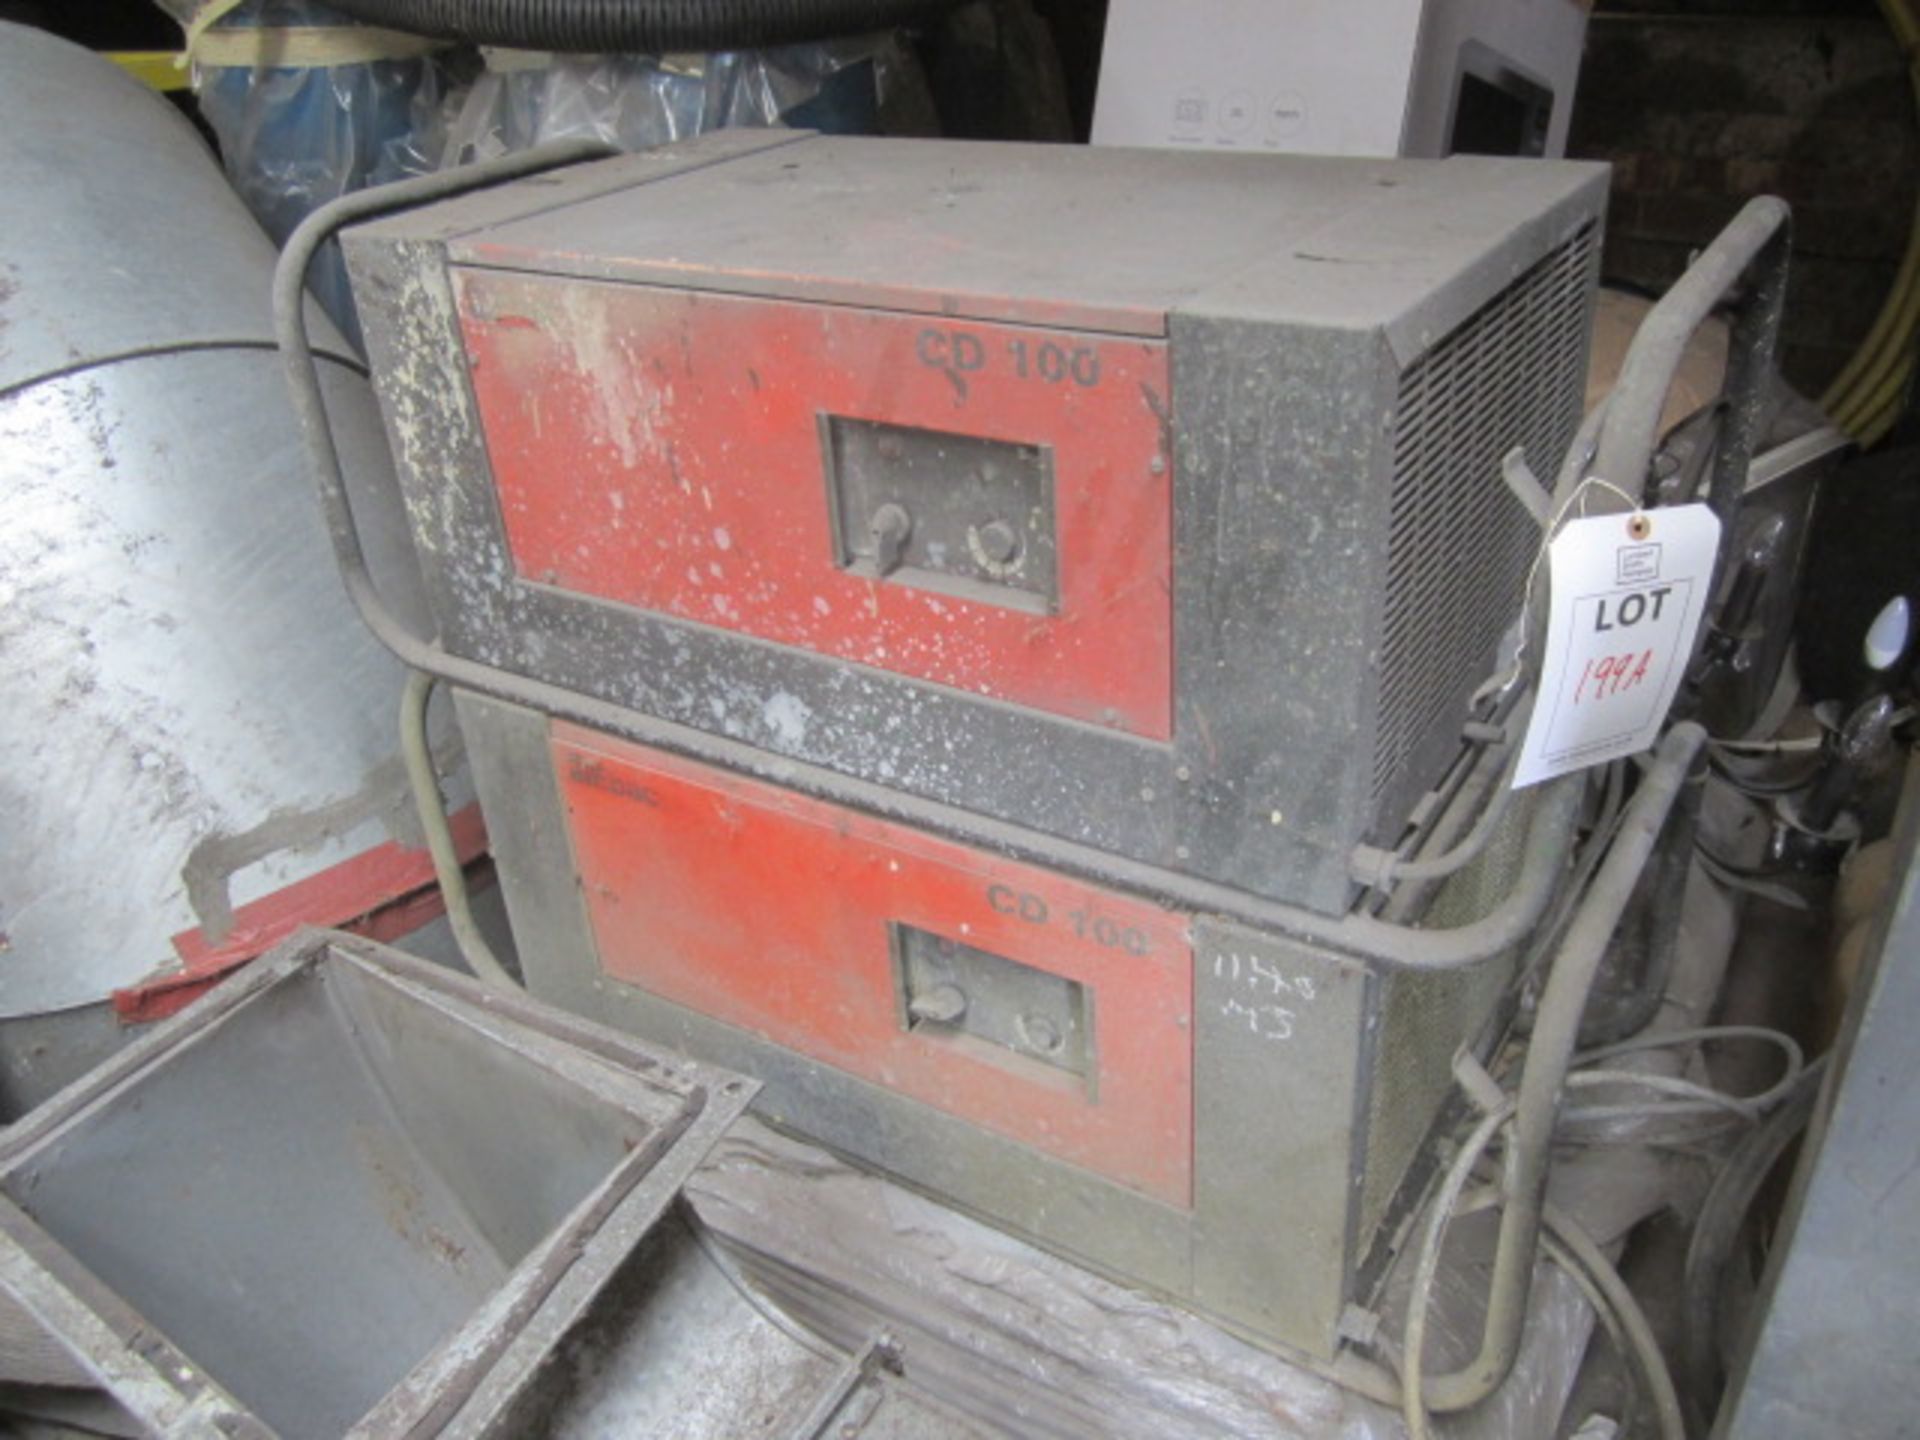 Two Ebac CD100 dehumidifiers, 240v